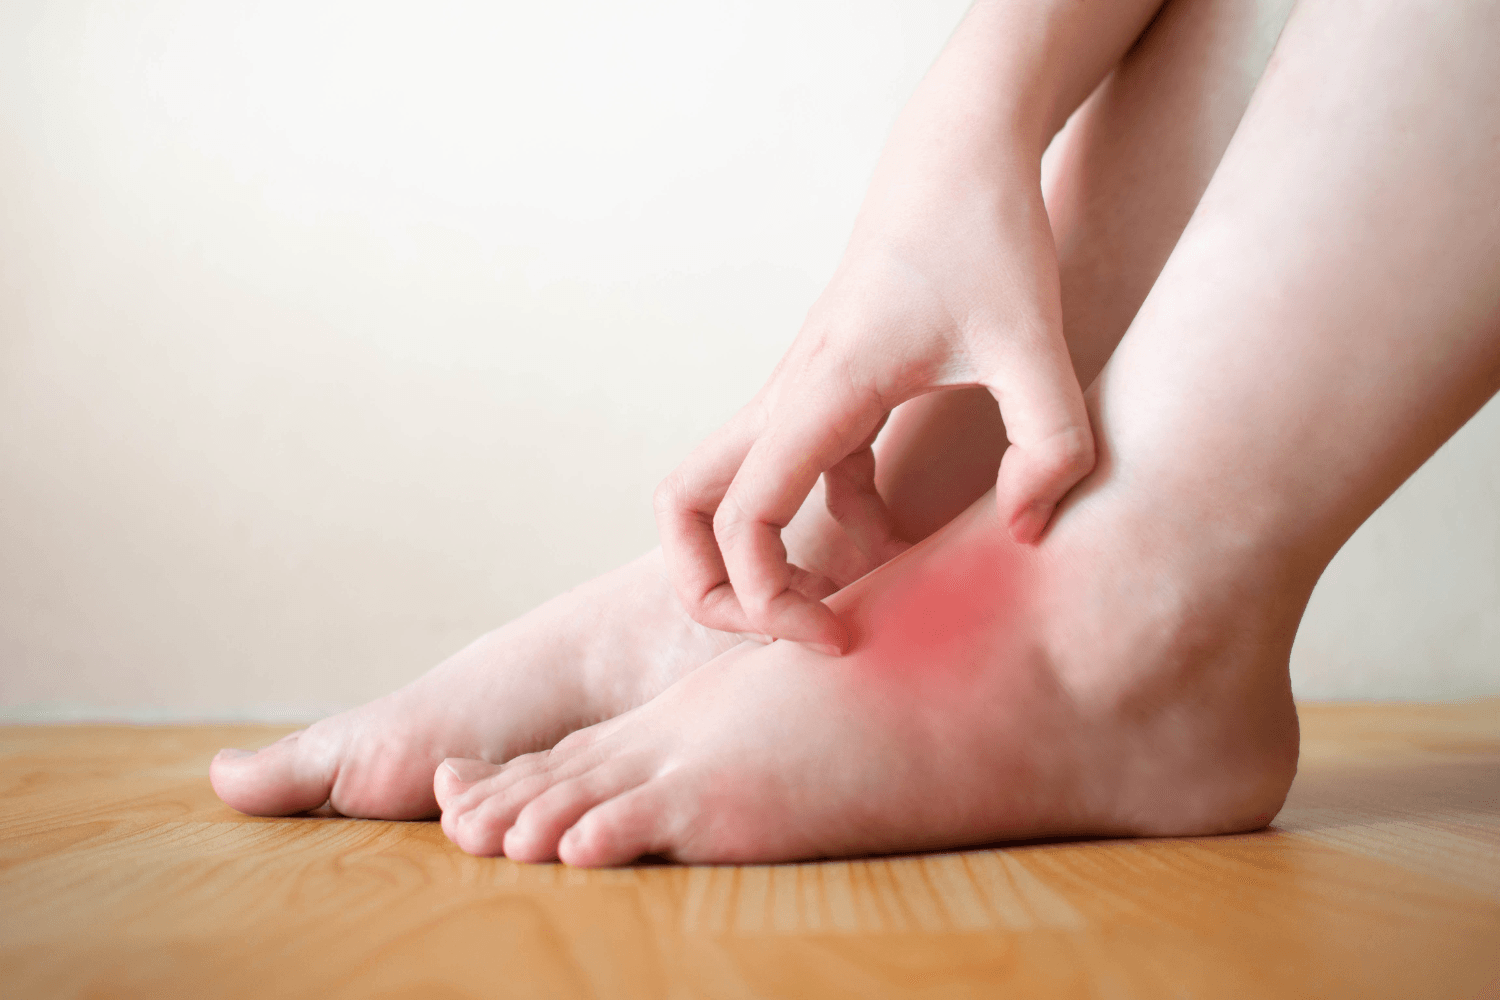 Swelling in feet